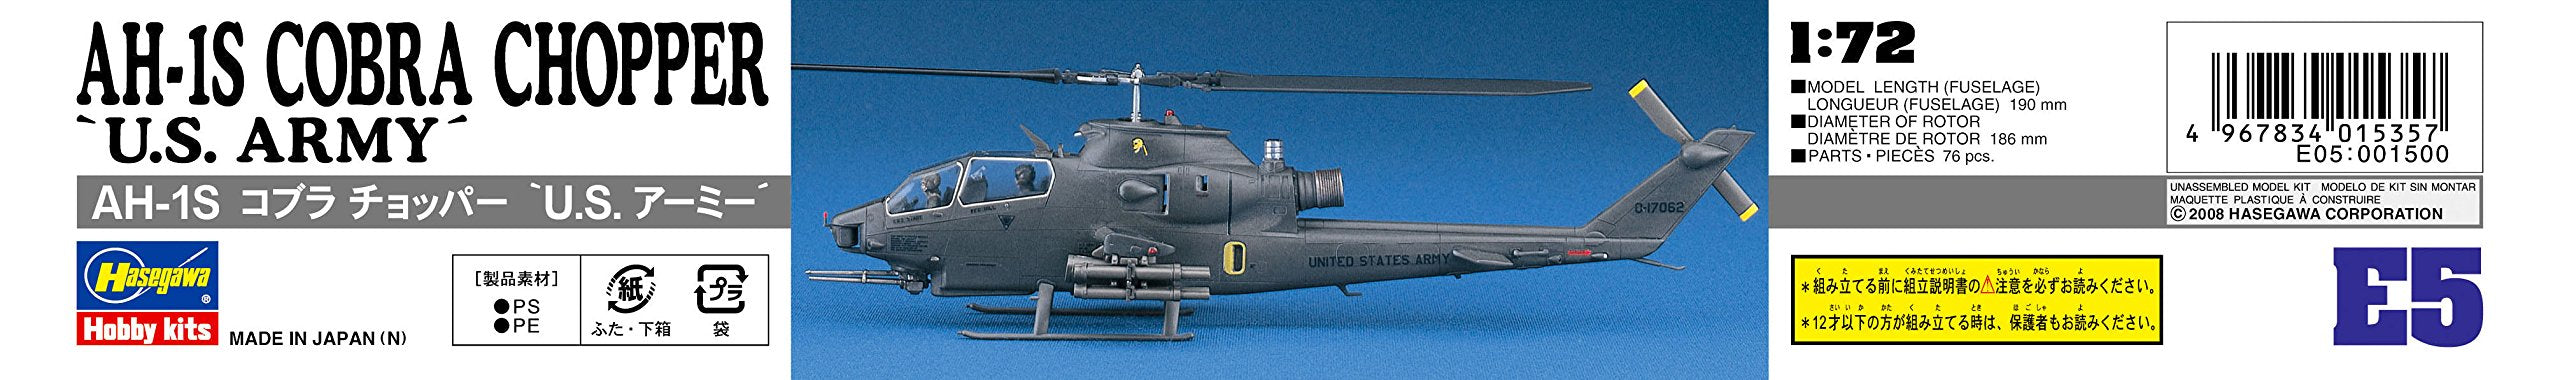 HASEGAWA E05 Ah-1S Cobra Chopper U.S. Army 1/72 Scale Kit